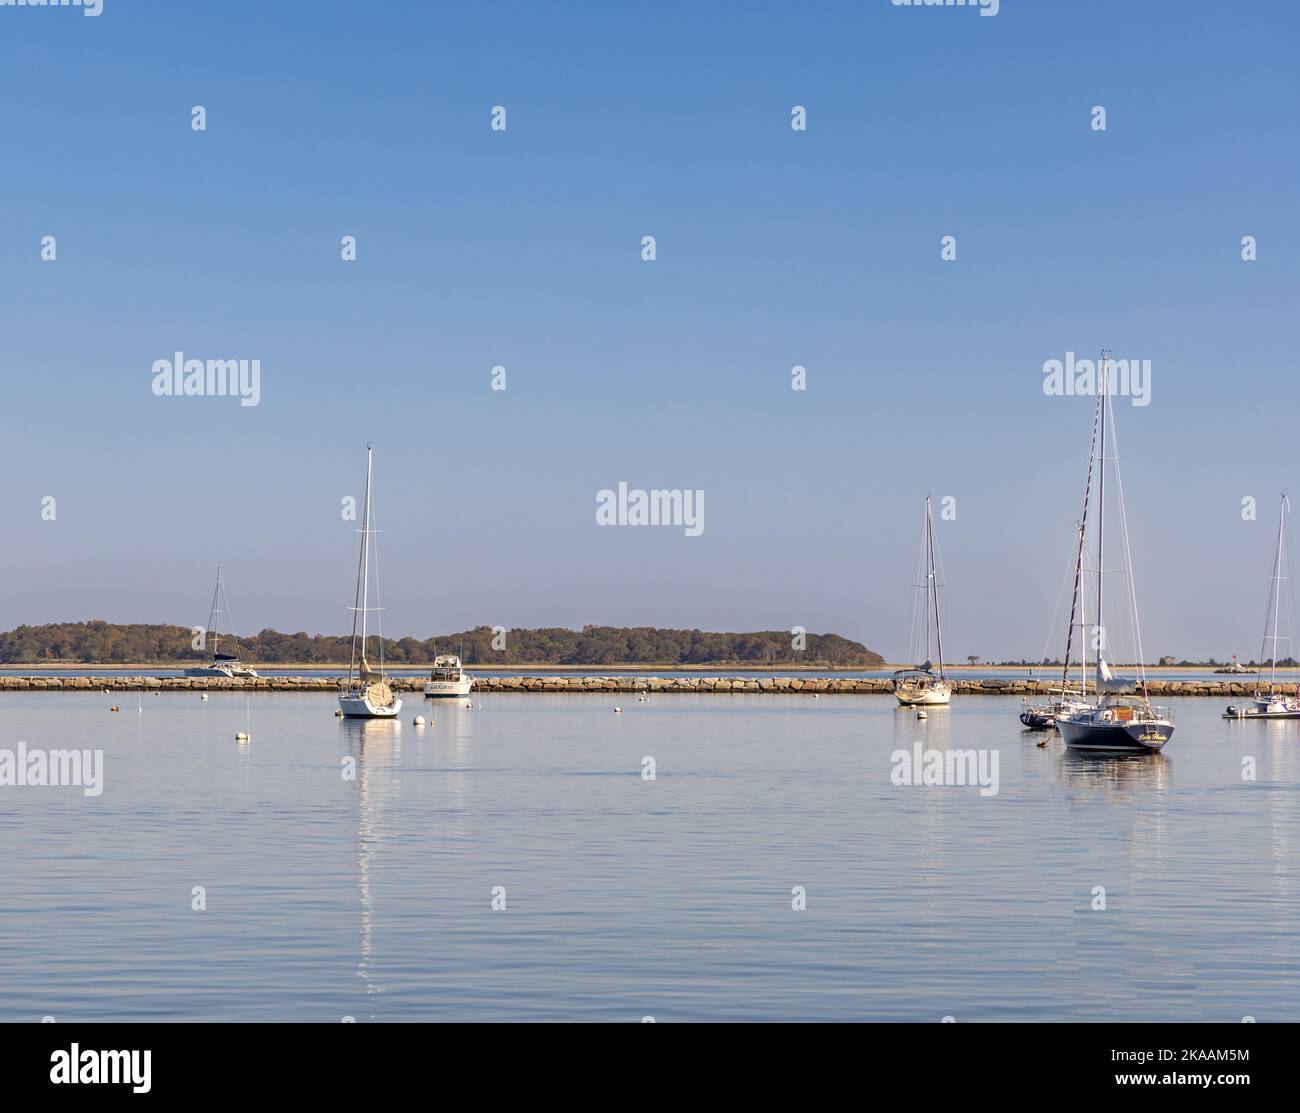 Paesaggio tranquillo costituito da barche a vela sugli ormeggi a Sag Harbor, NY Foto Stock